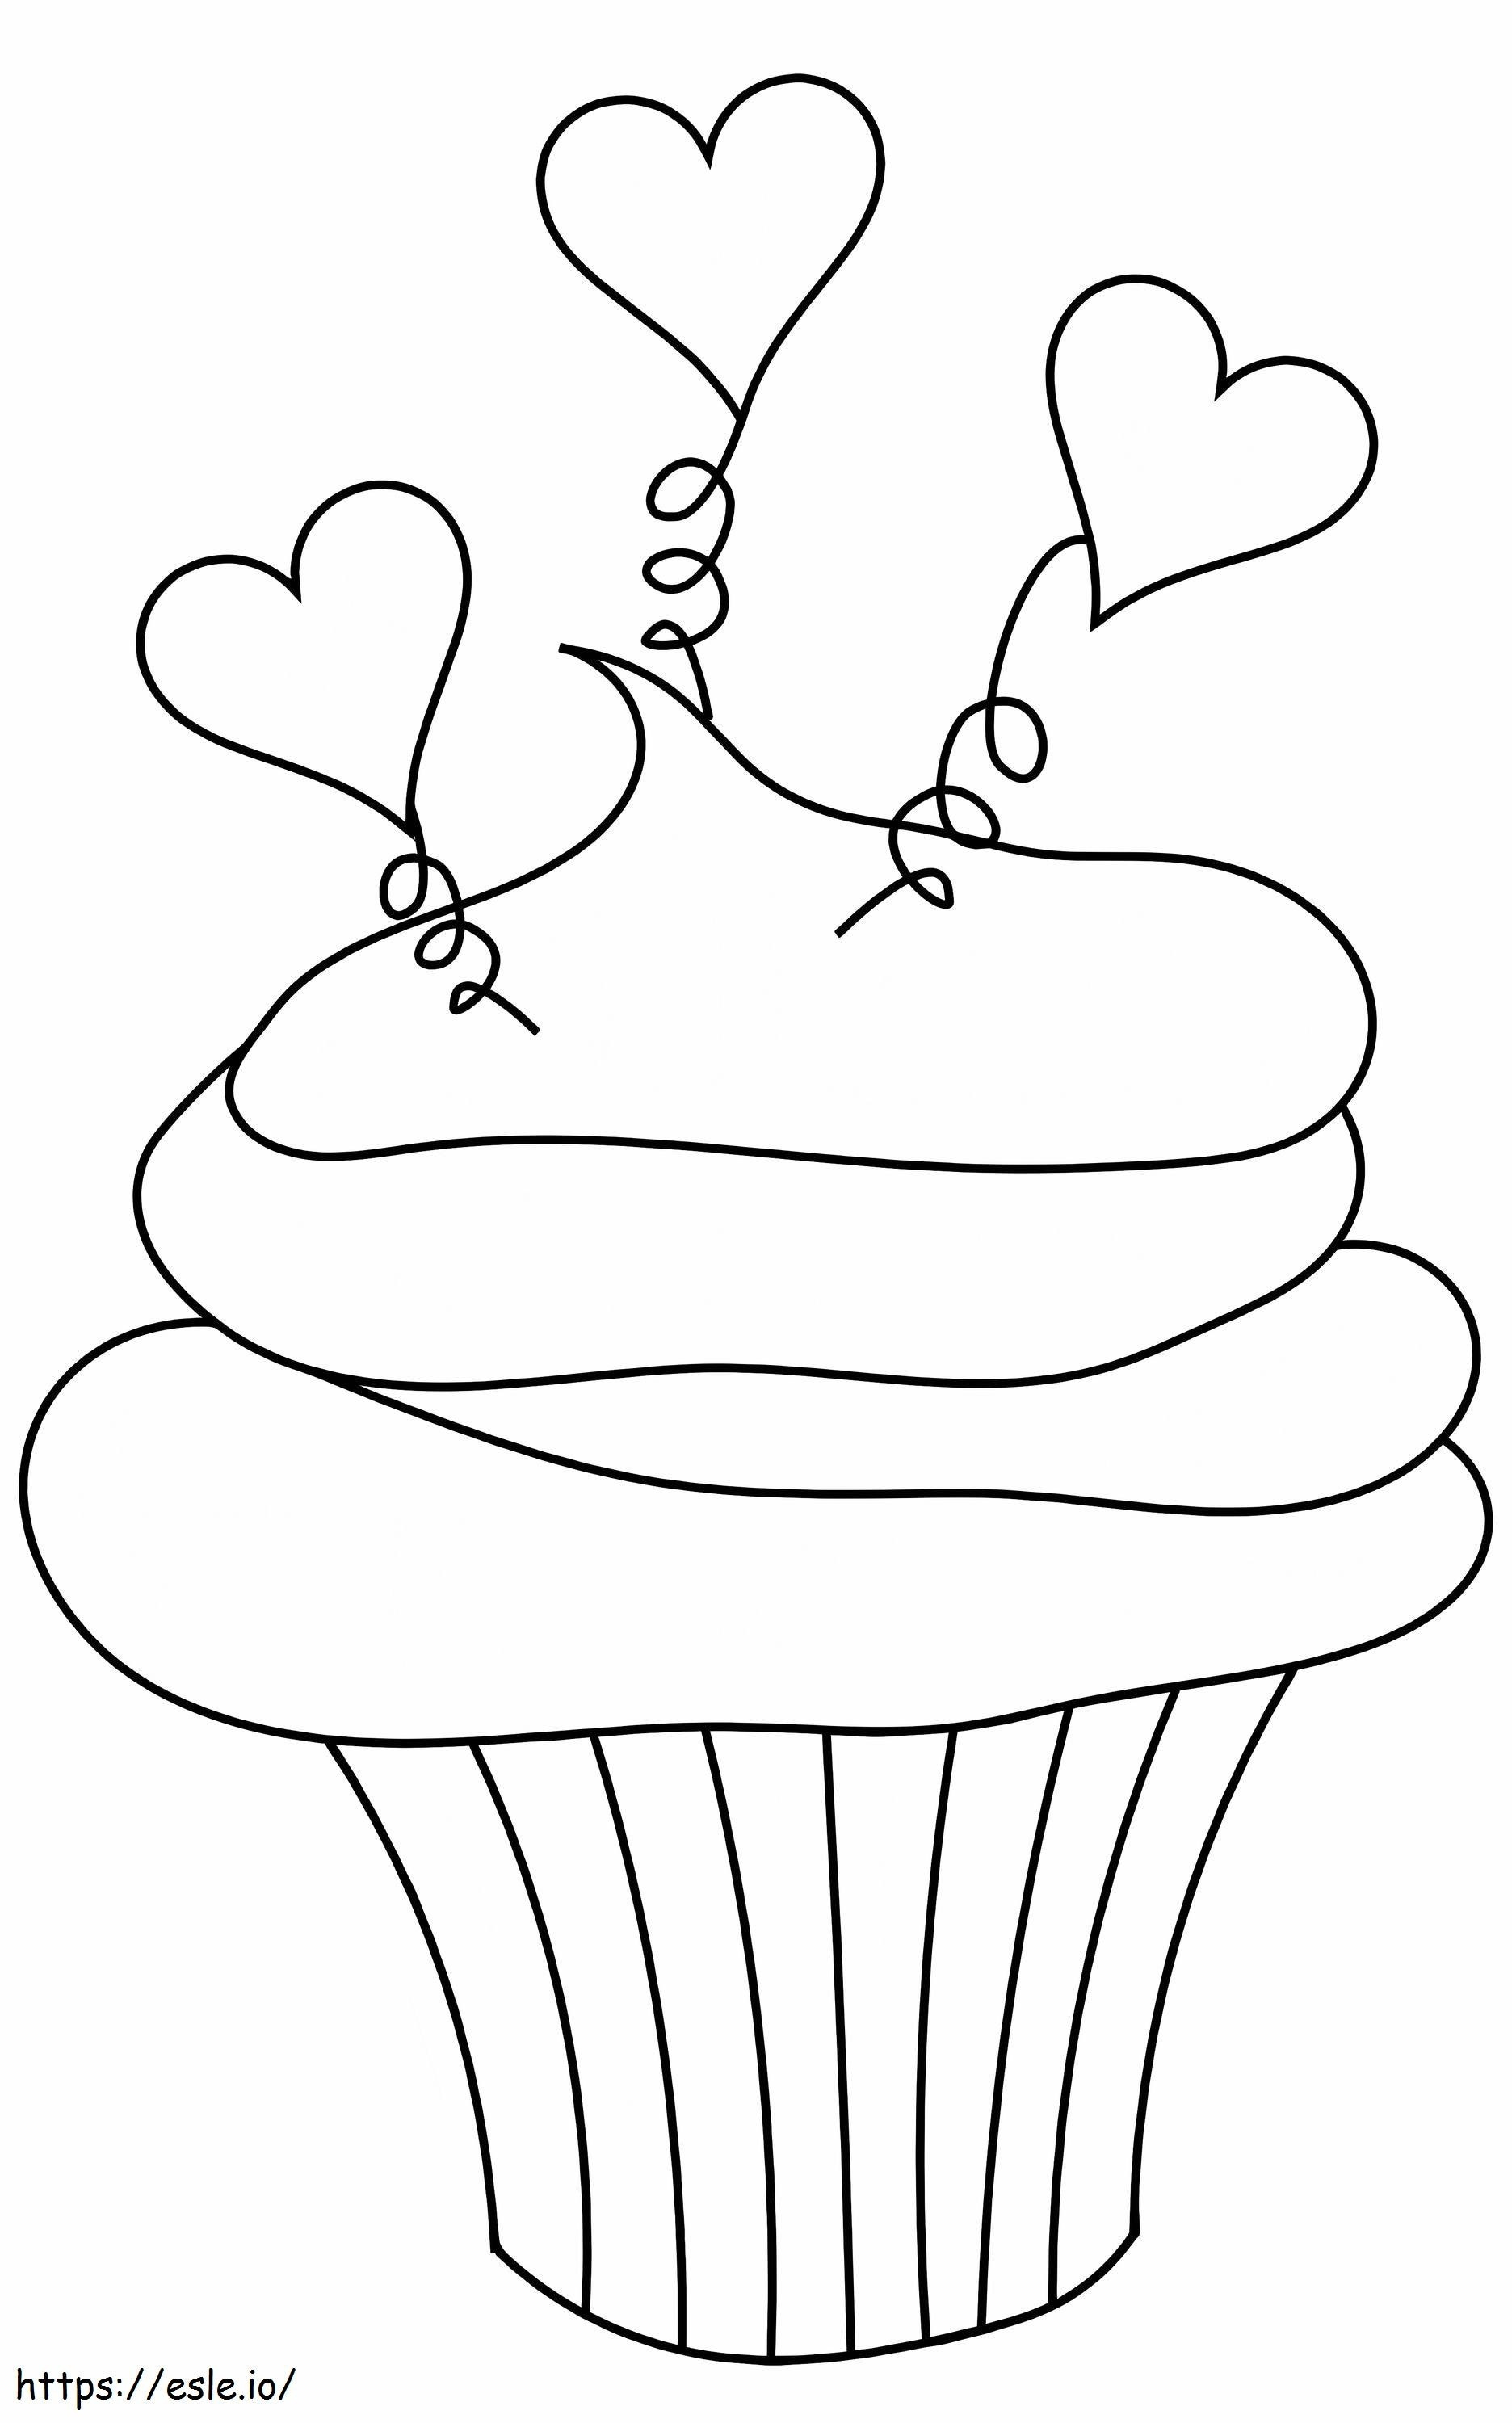 Születésnapi cupcake 2 kifestő